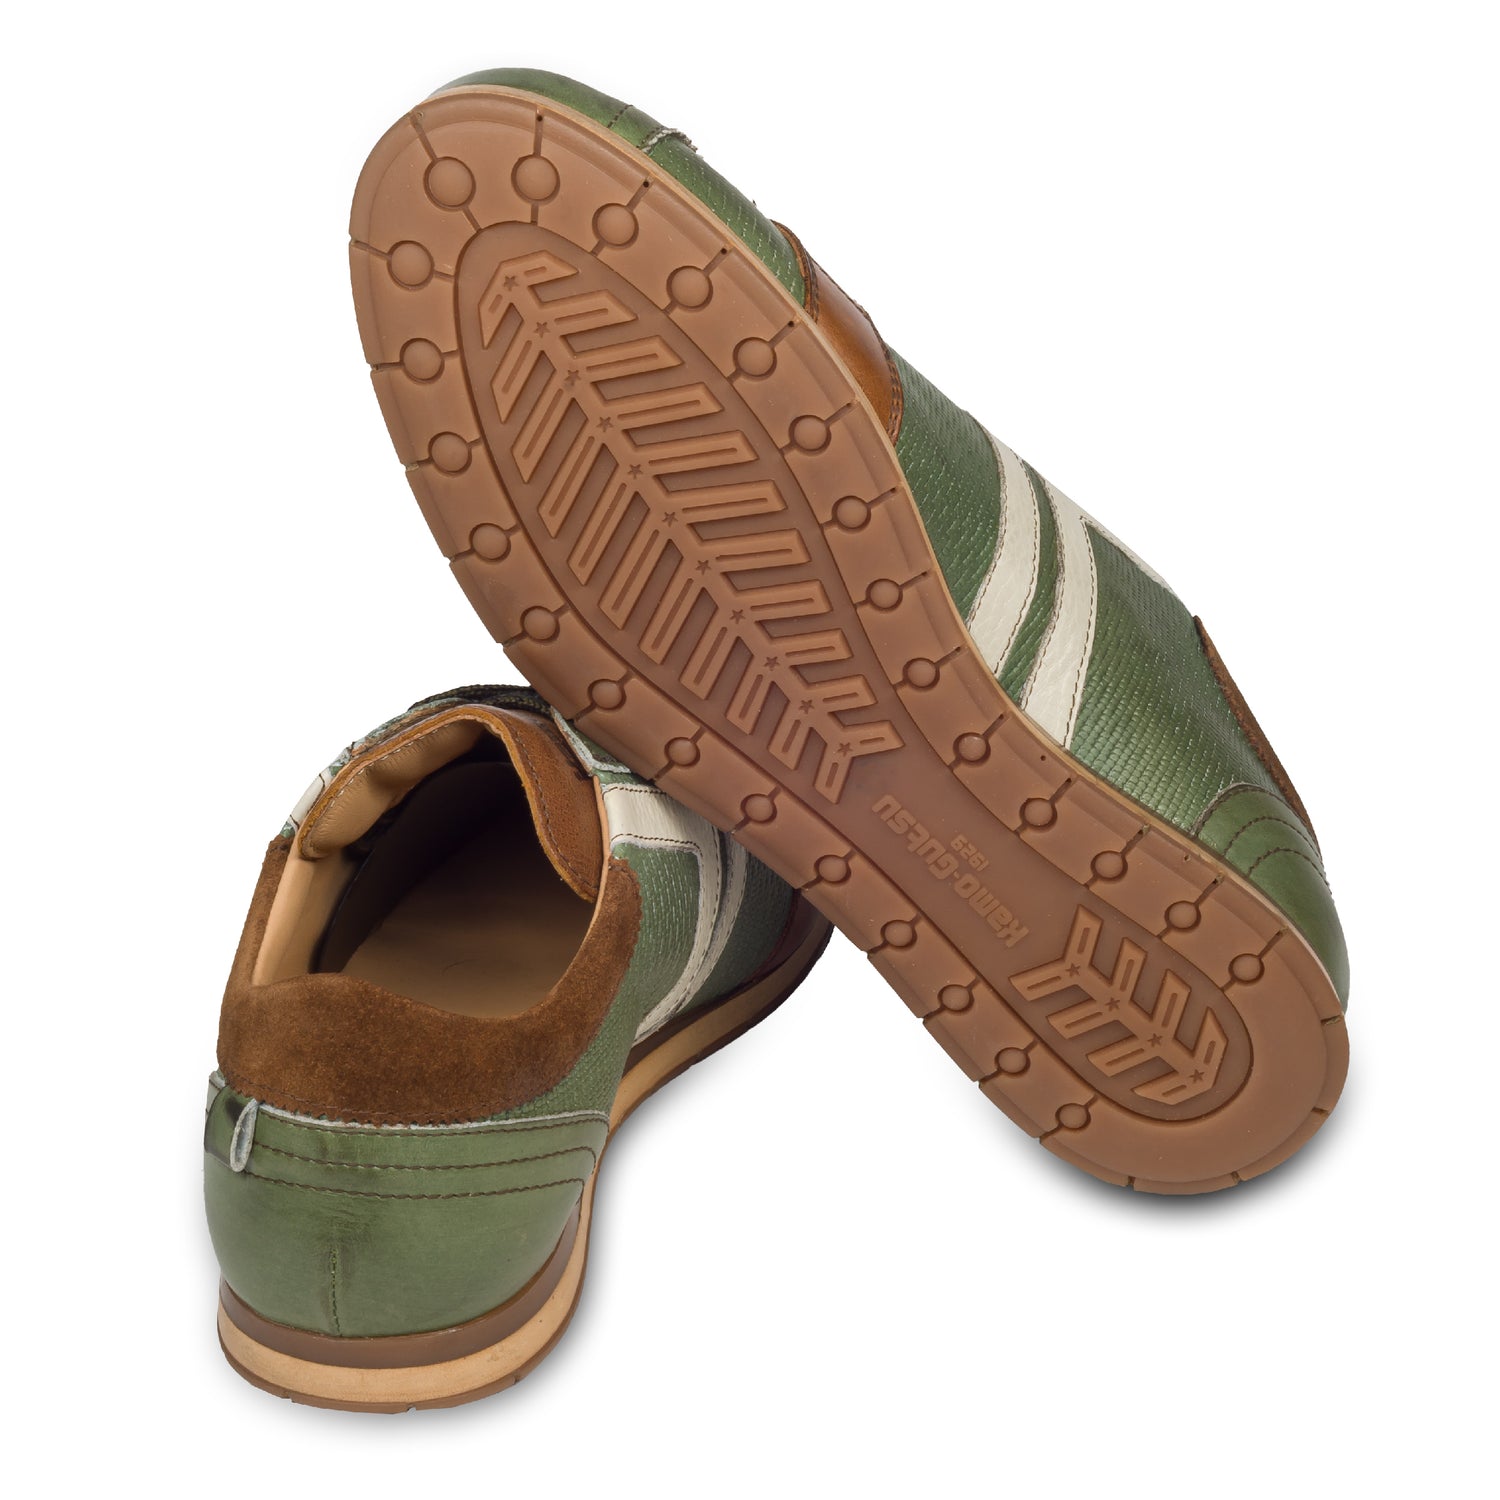 KAMO-GUTSU Sneaker, grün mit braun und weiß, Ansicht der Ferse und Sohlenunterseite